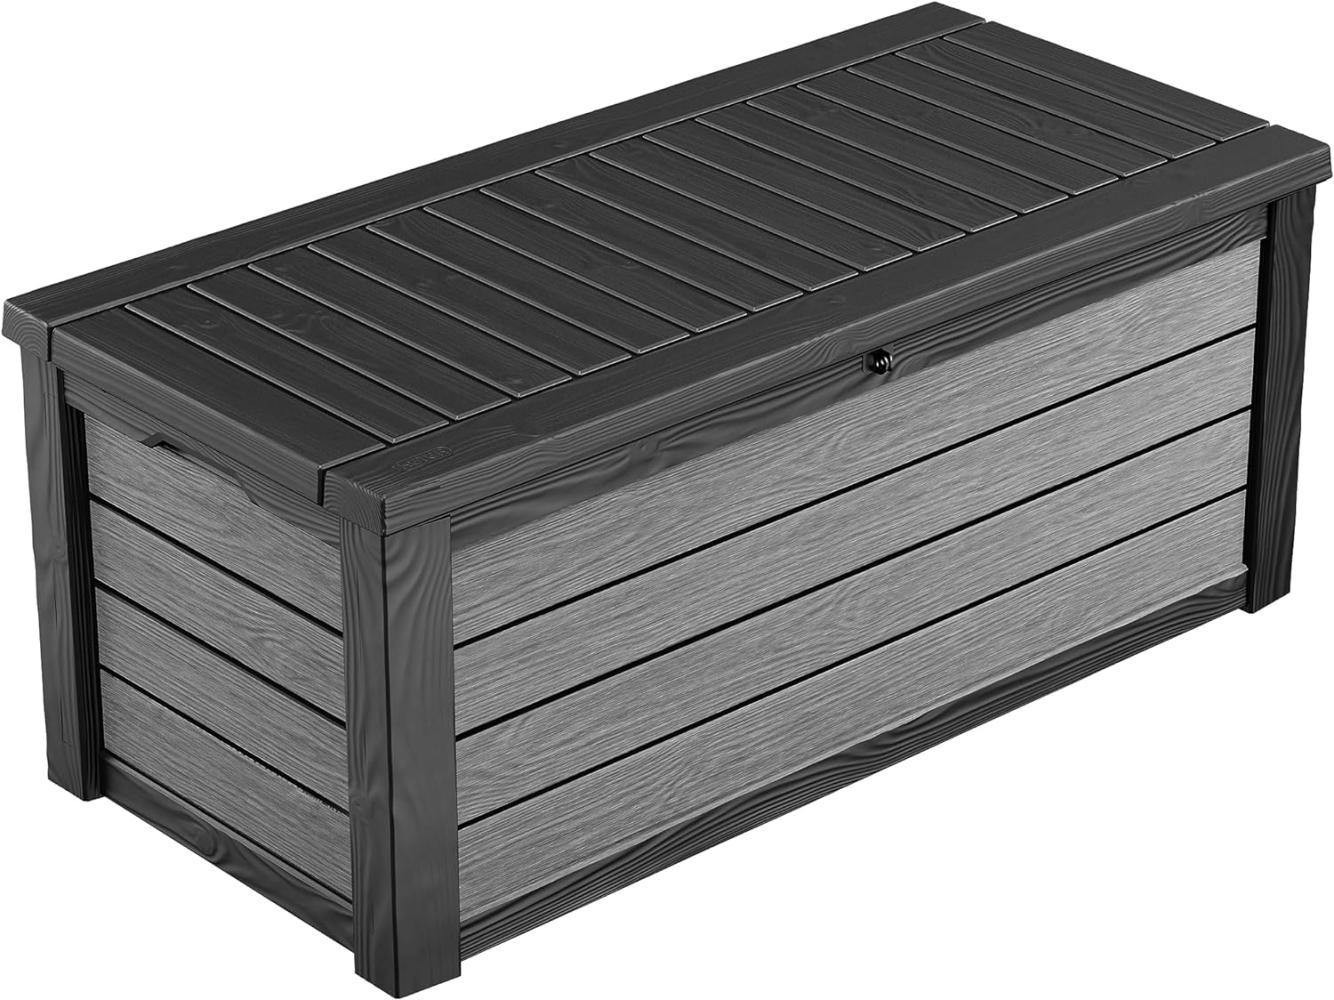 Keter Brushwood Kissenbox, Auflagenbox, 454 Liter Volumen, Wasserdicht, Graphit, Holzoptik, Sitzbank für 2 Erwachsene (max. 300kg), 145x69. 7x60. 3cm, Allzwecktruhe Bild 1